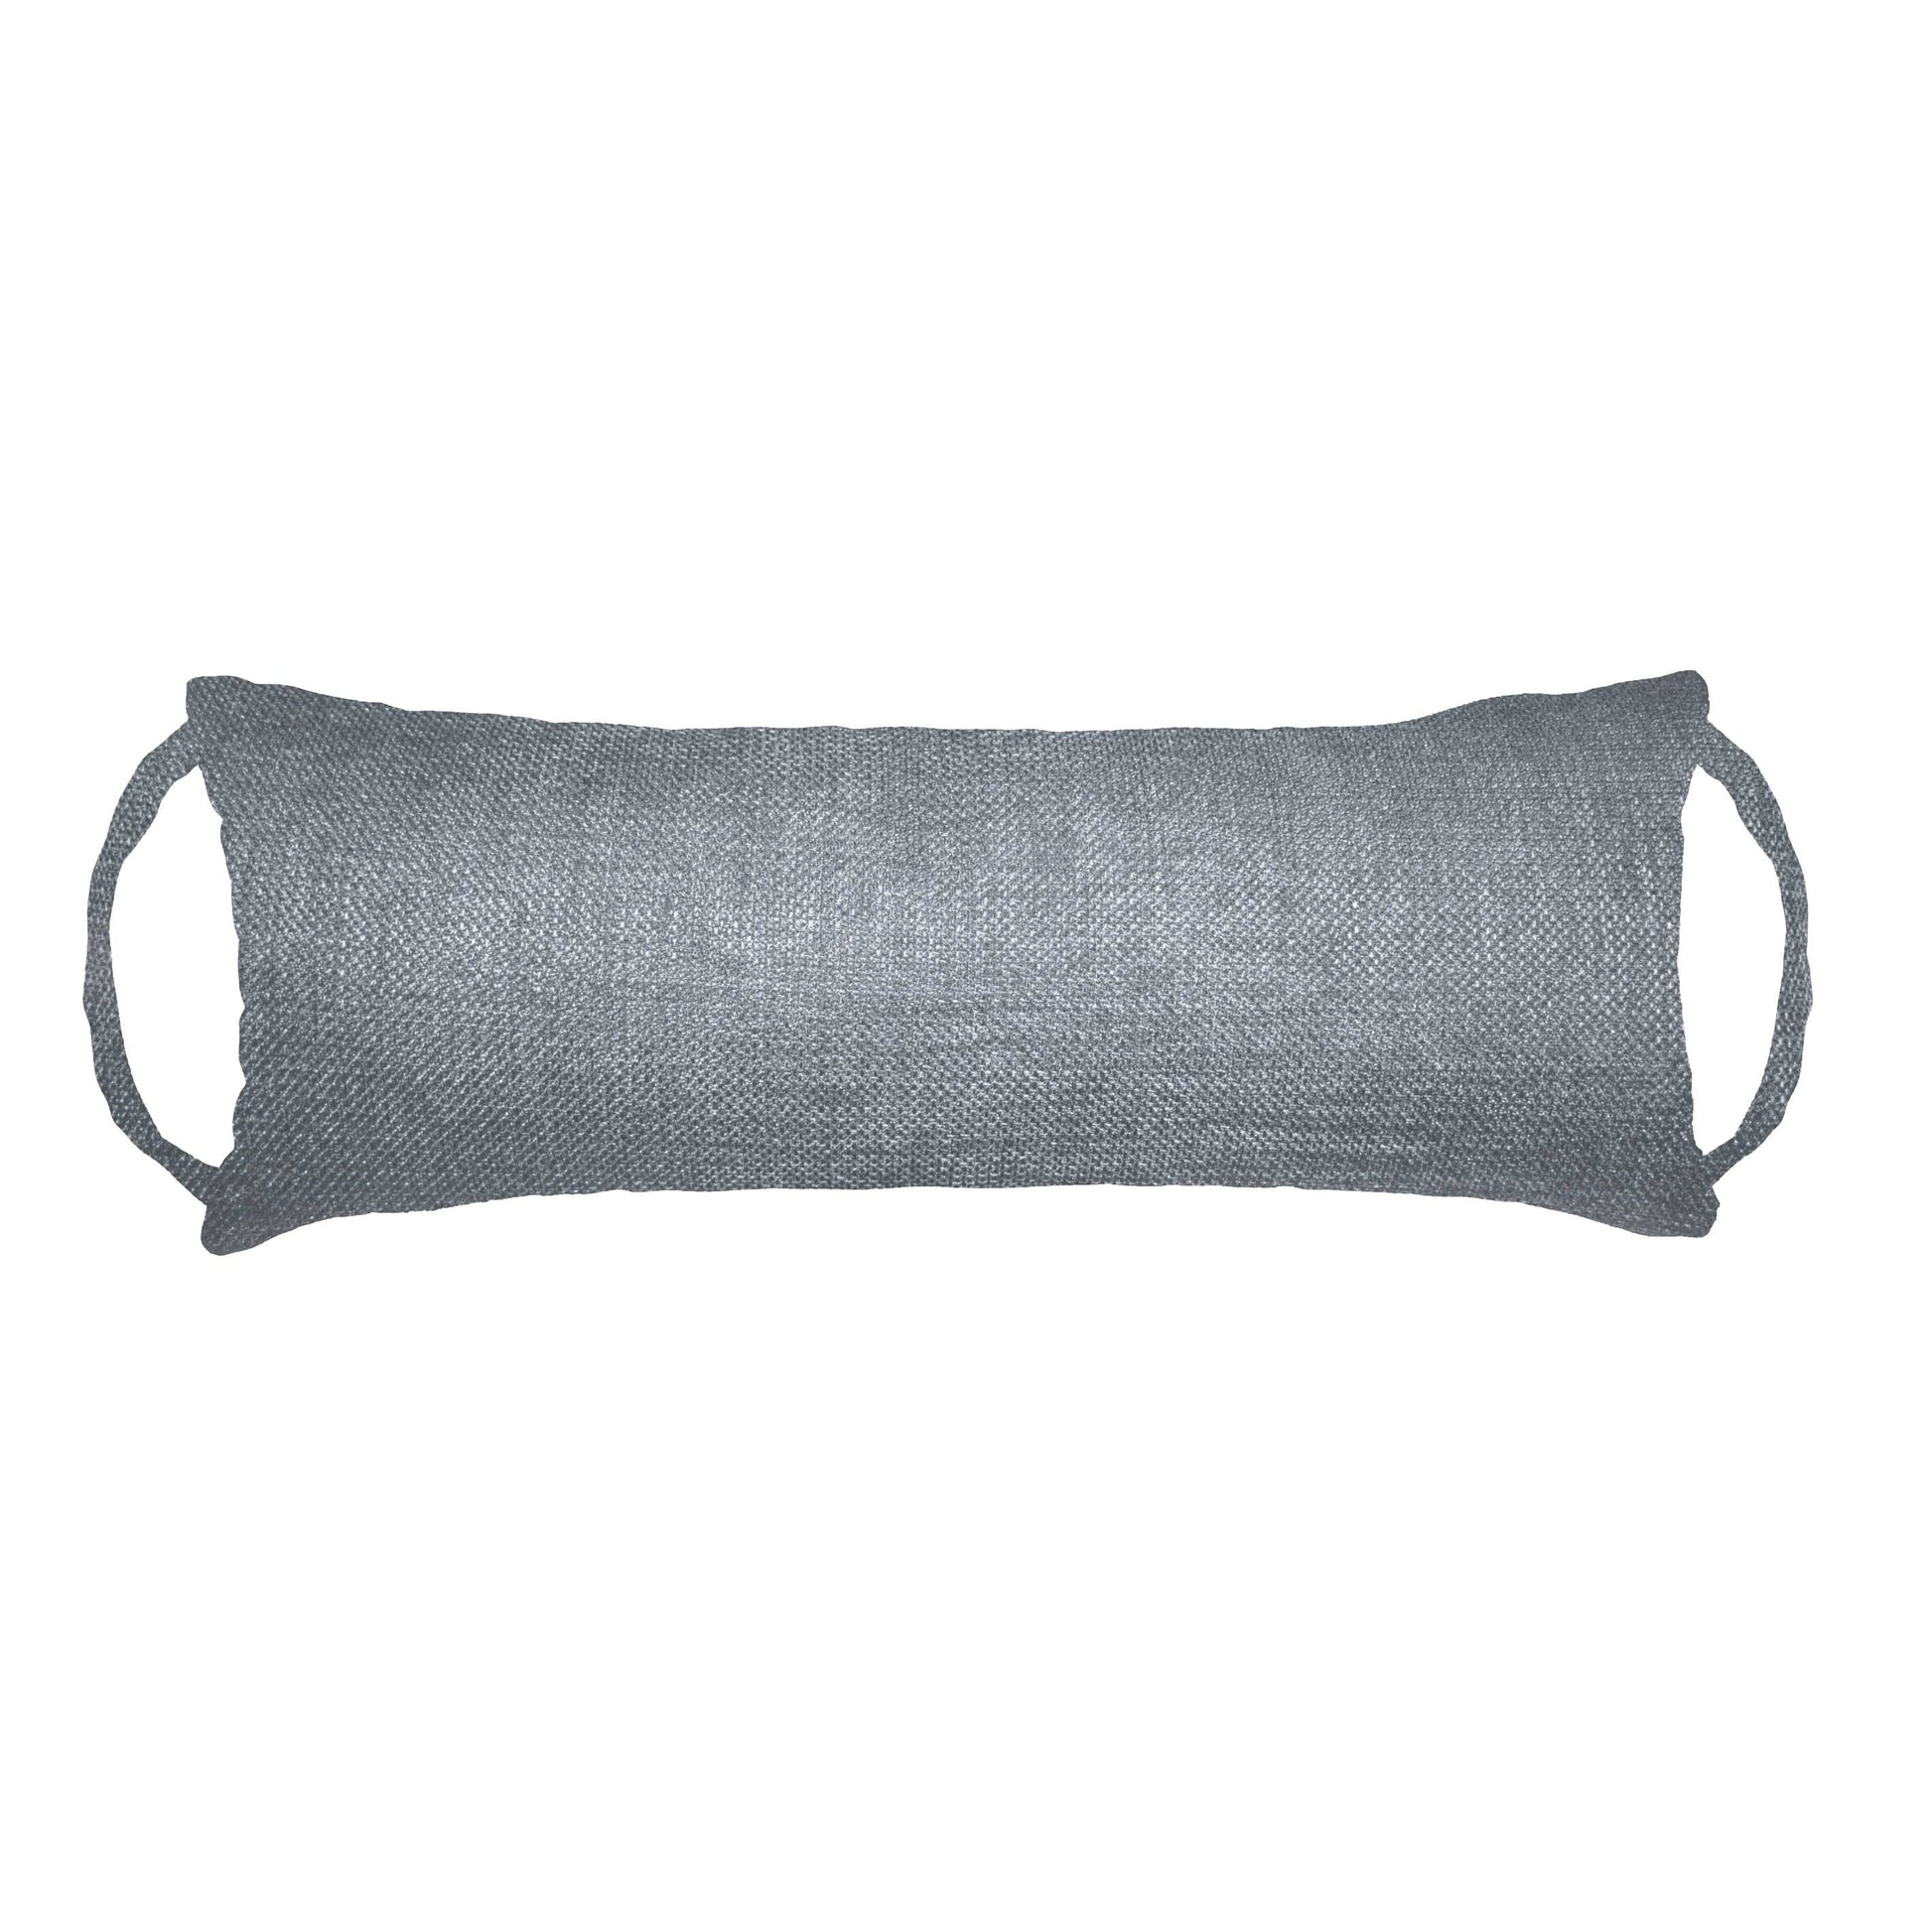 Rave Grey Travel Pillow | Neck Roll Pillow | Barnett Home Decor